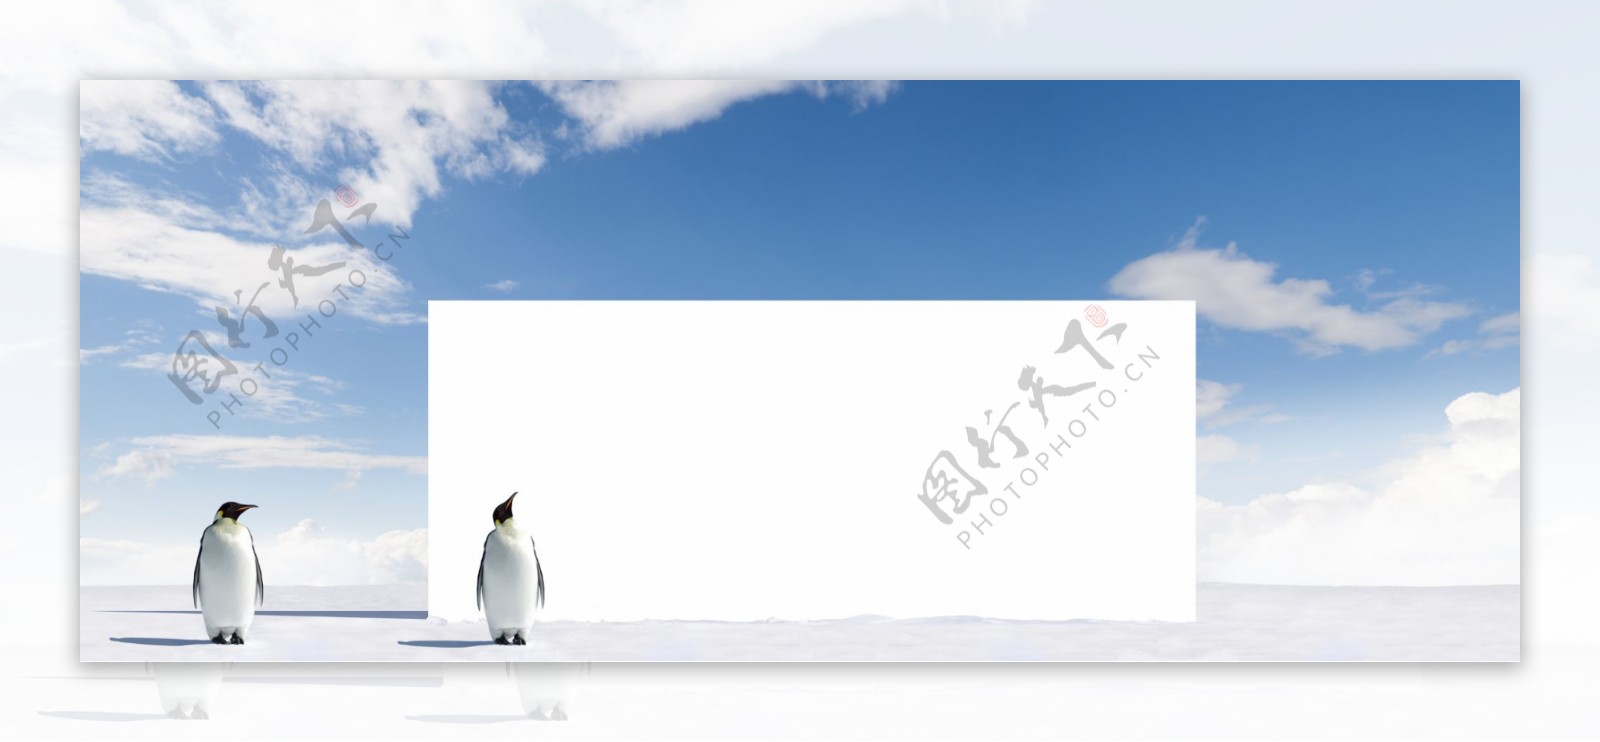 企鹅与广告牌图片